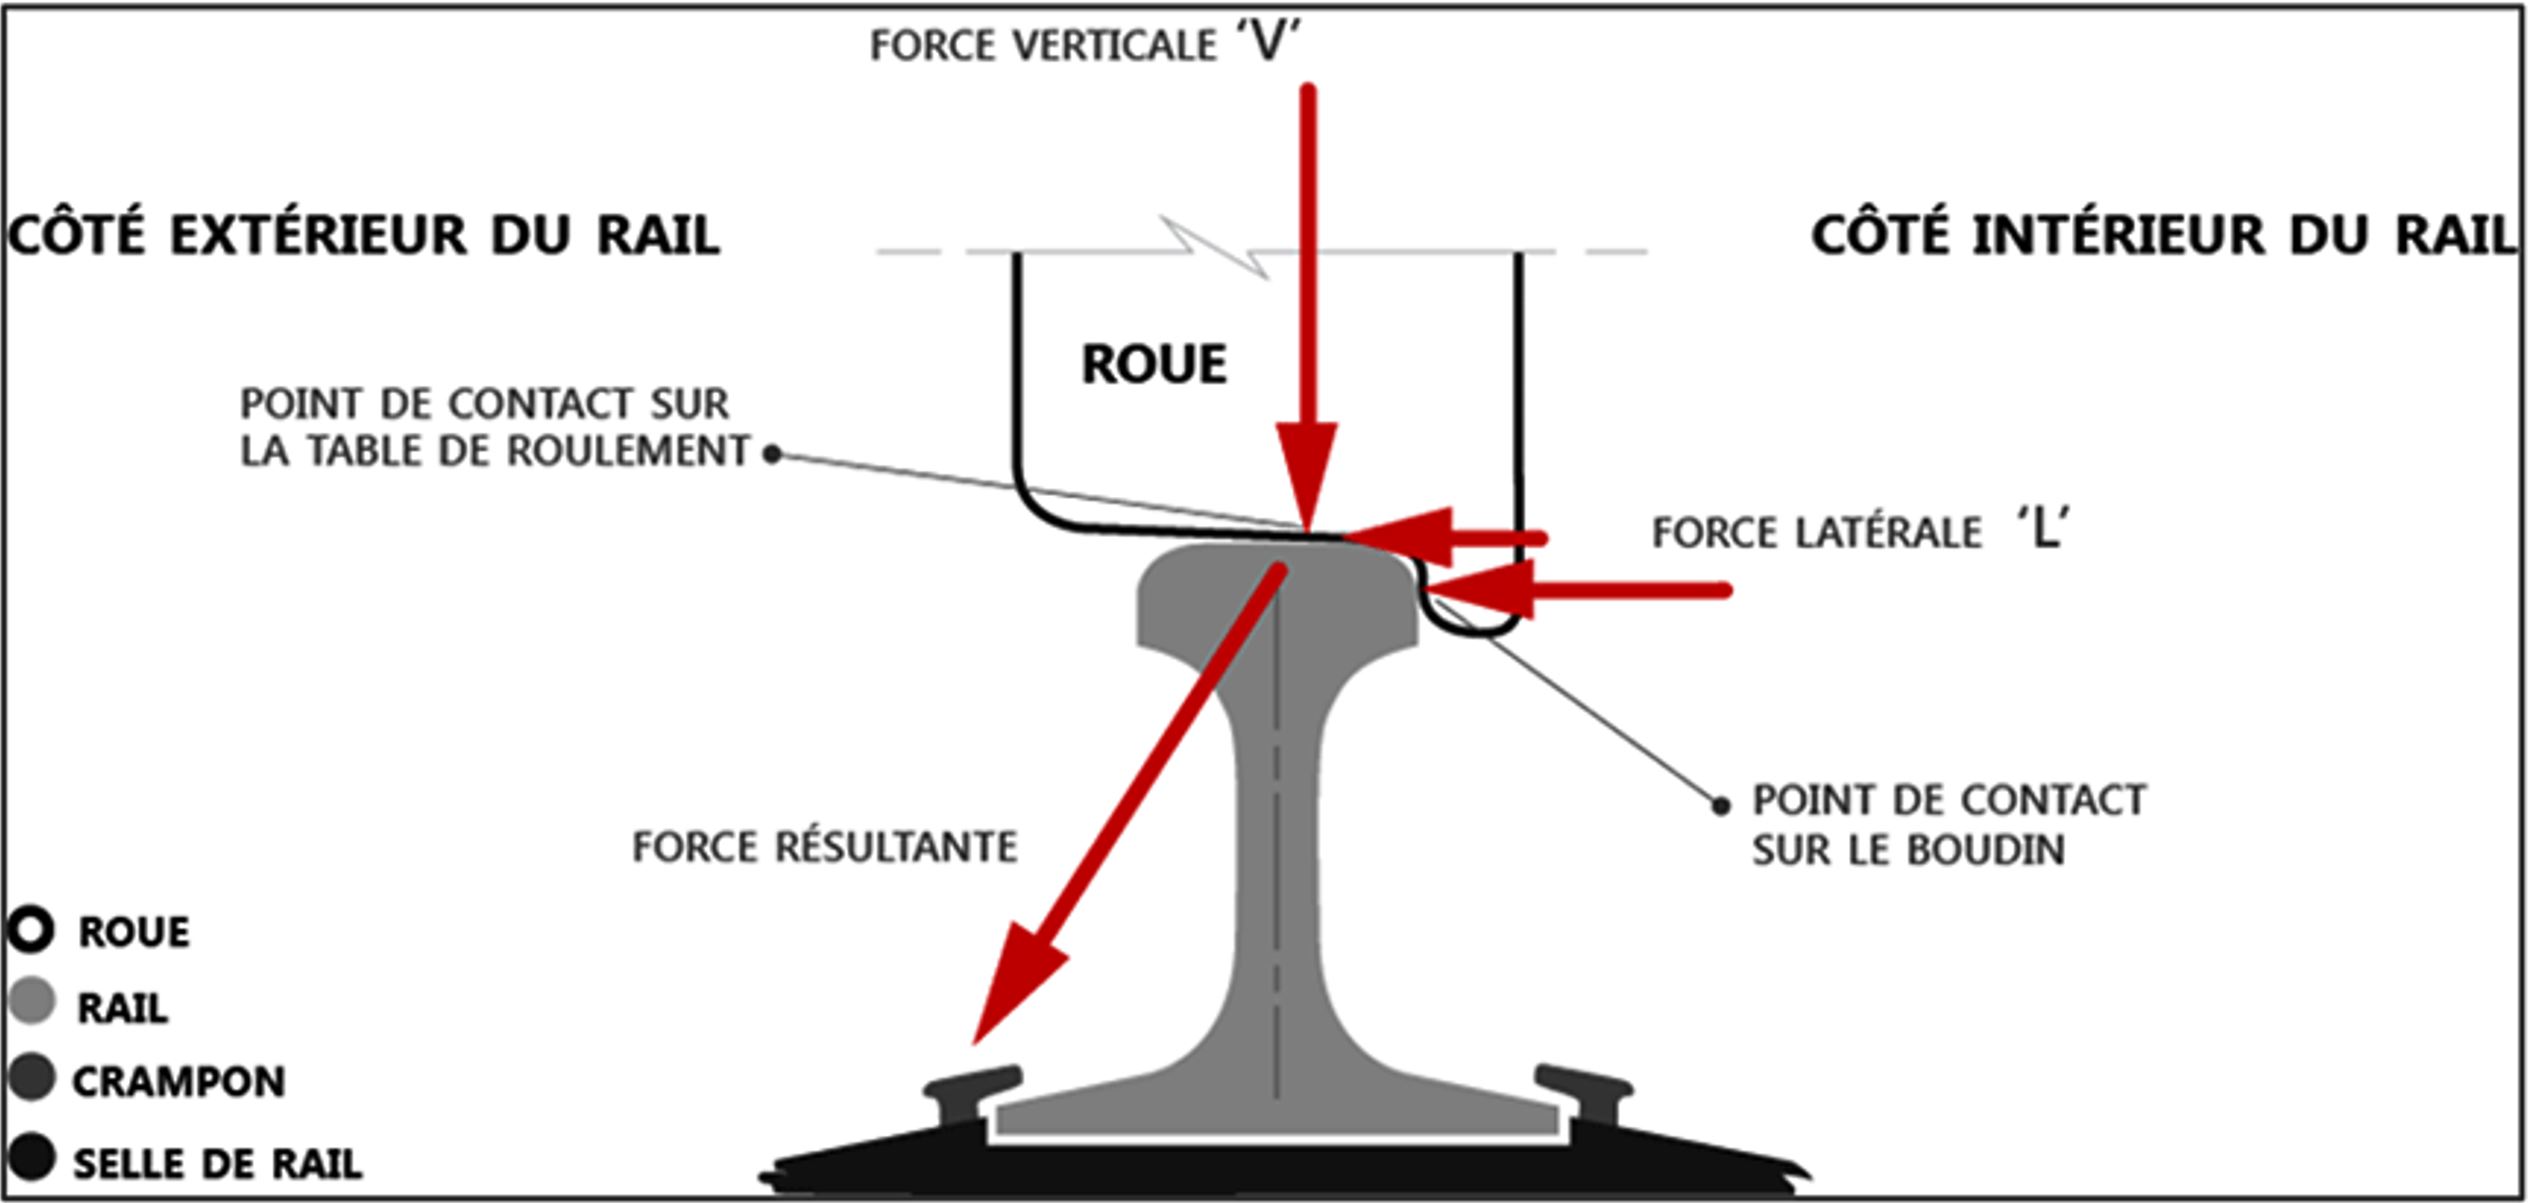 Forces latérales et verticales entre la roue et le rail (Source : Association of American Railroads, avec annotations du BST)